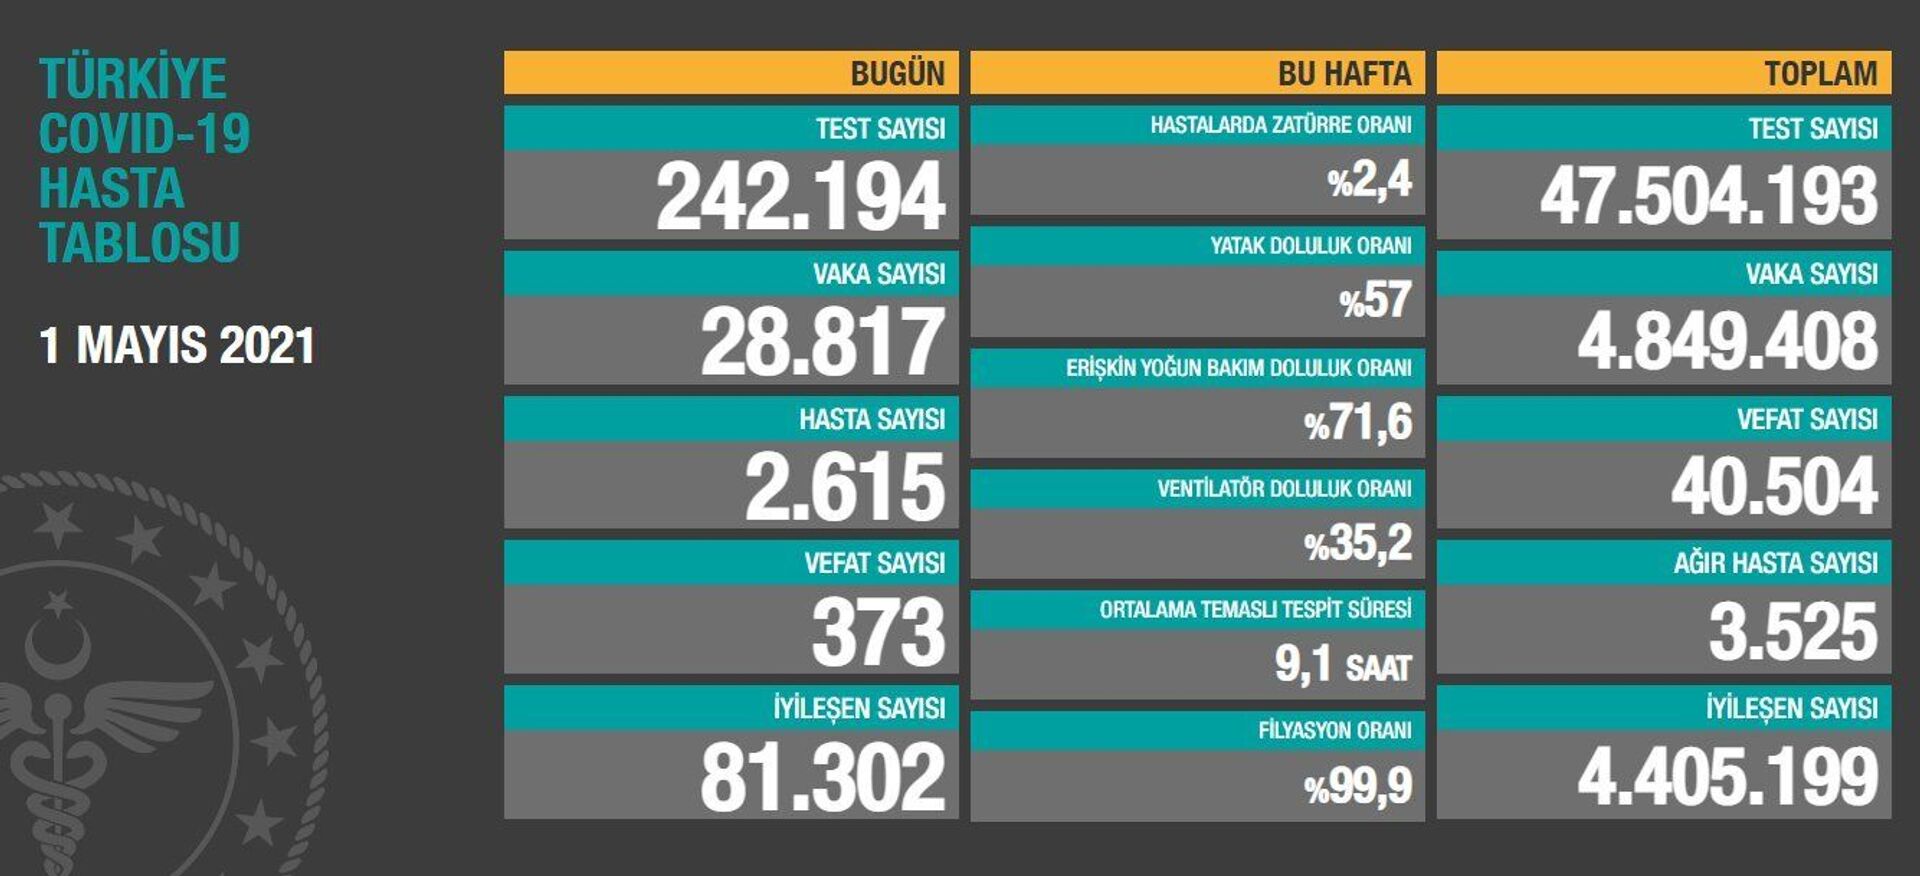 Türkiye'de son 24 saatte koronavirüsten 373 kişi hayatını kaybetti, 28 bin 817 kişinin testi pozitif çıktı - Sputnik Türkiye, 1920, 01.05.2021